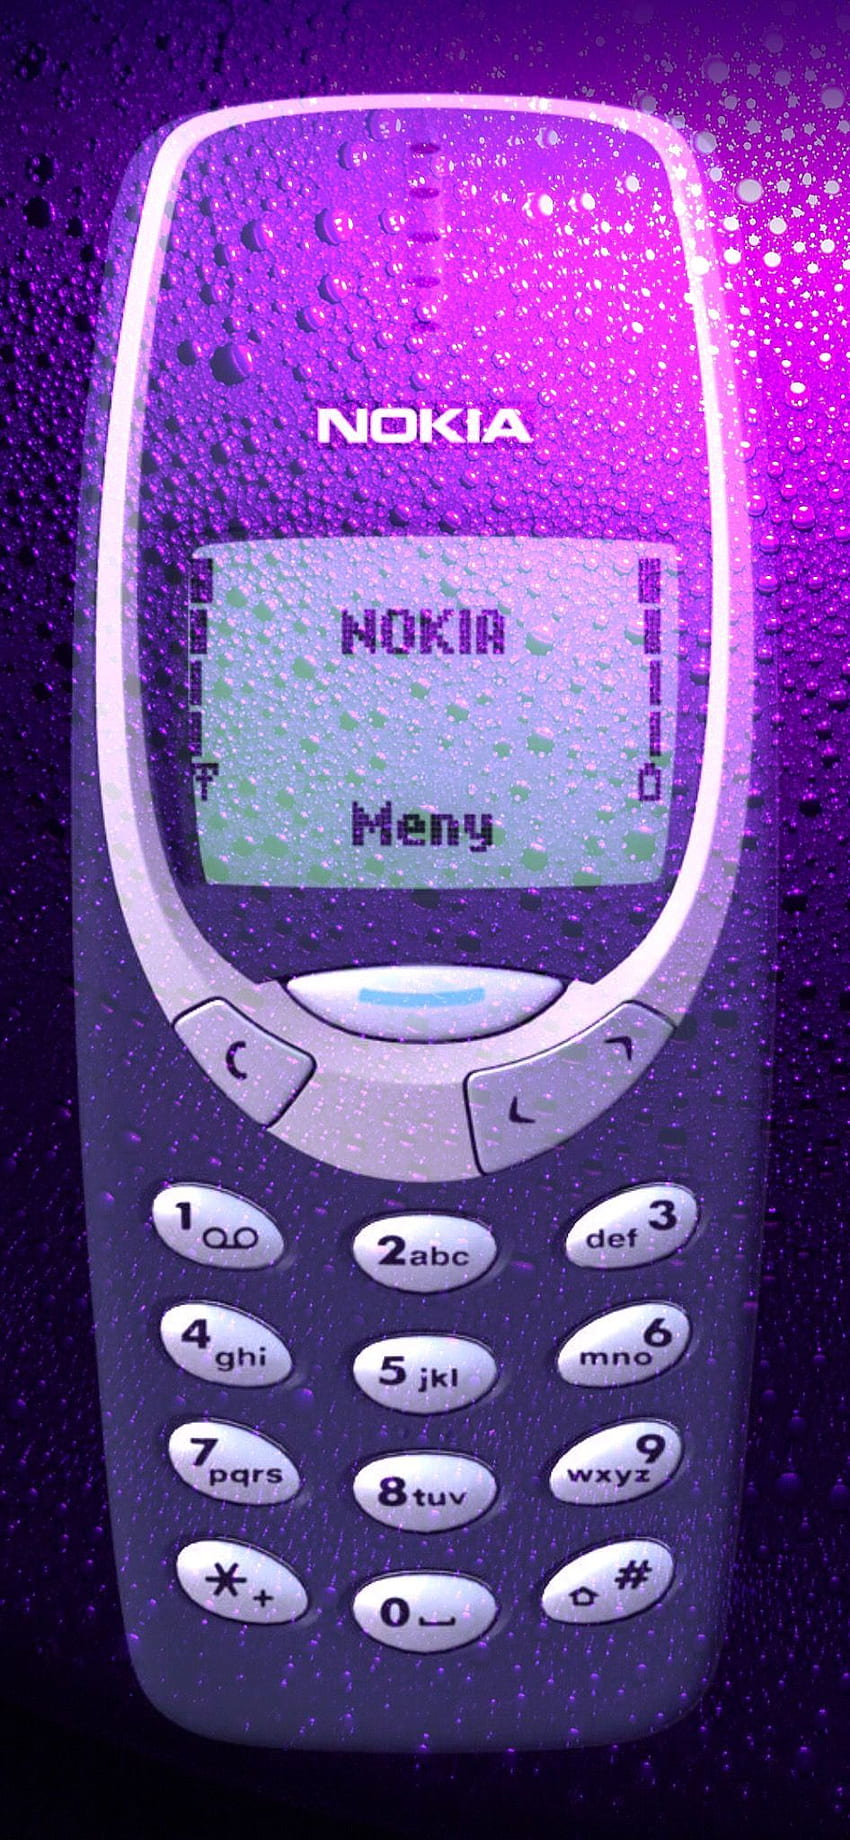 Nokia iphone HD wallpapers  Pxfuel